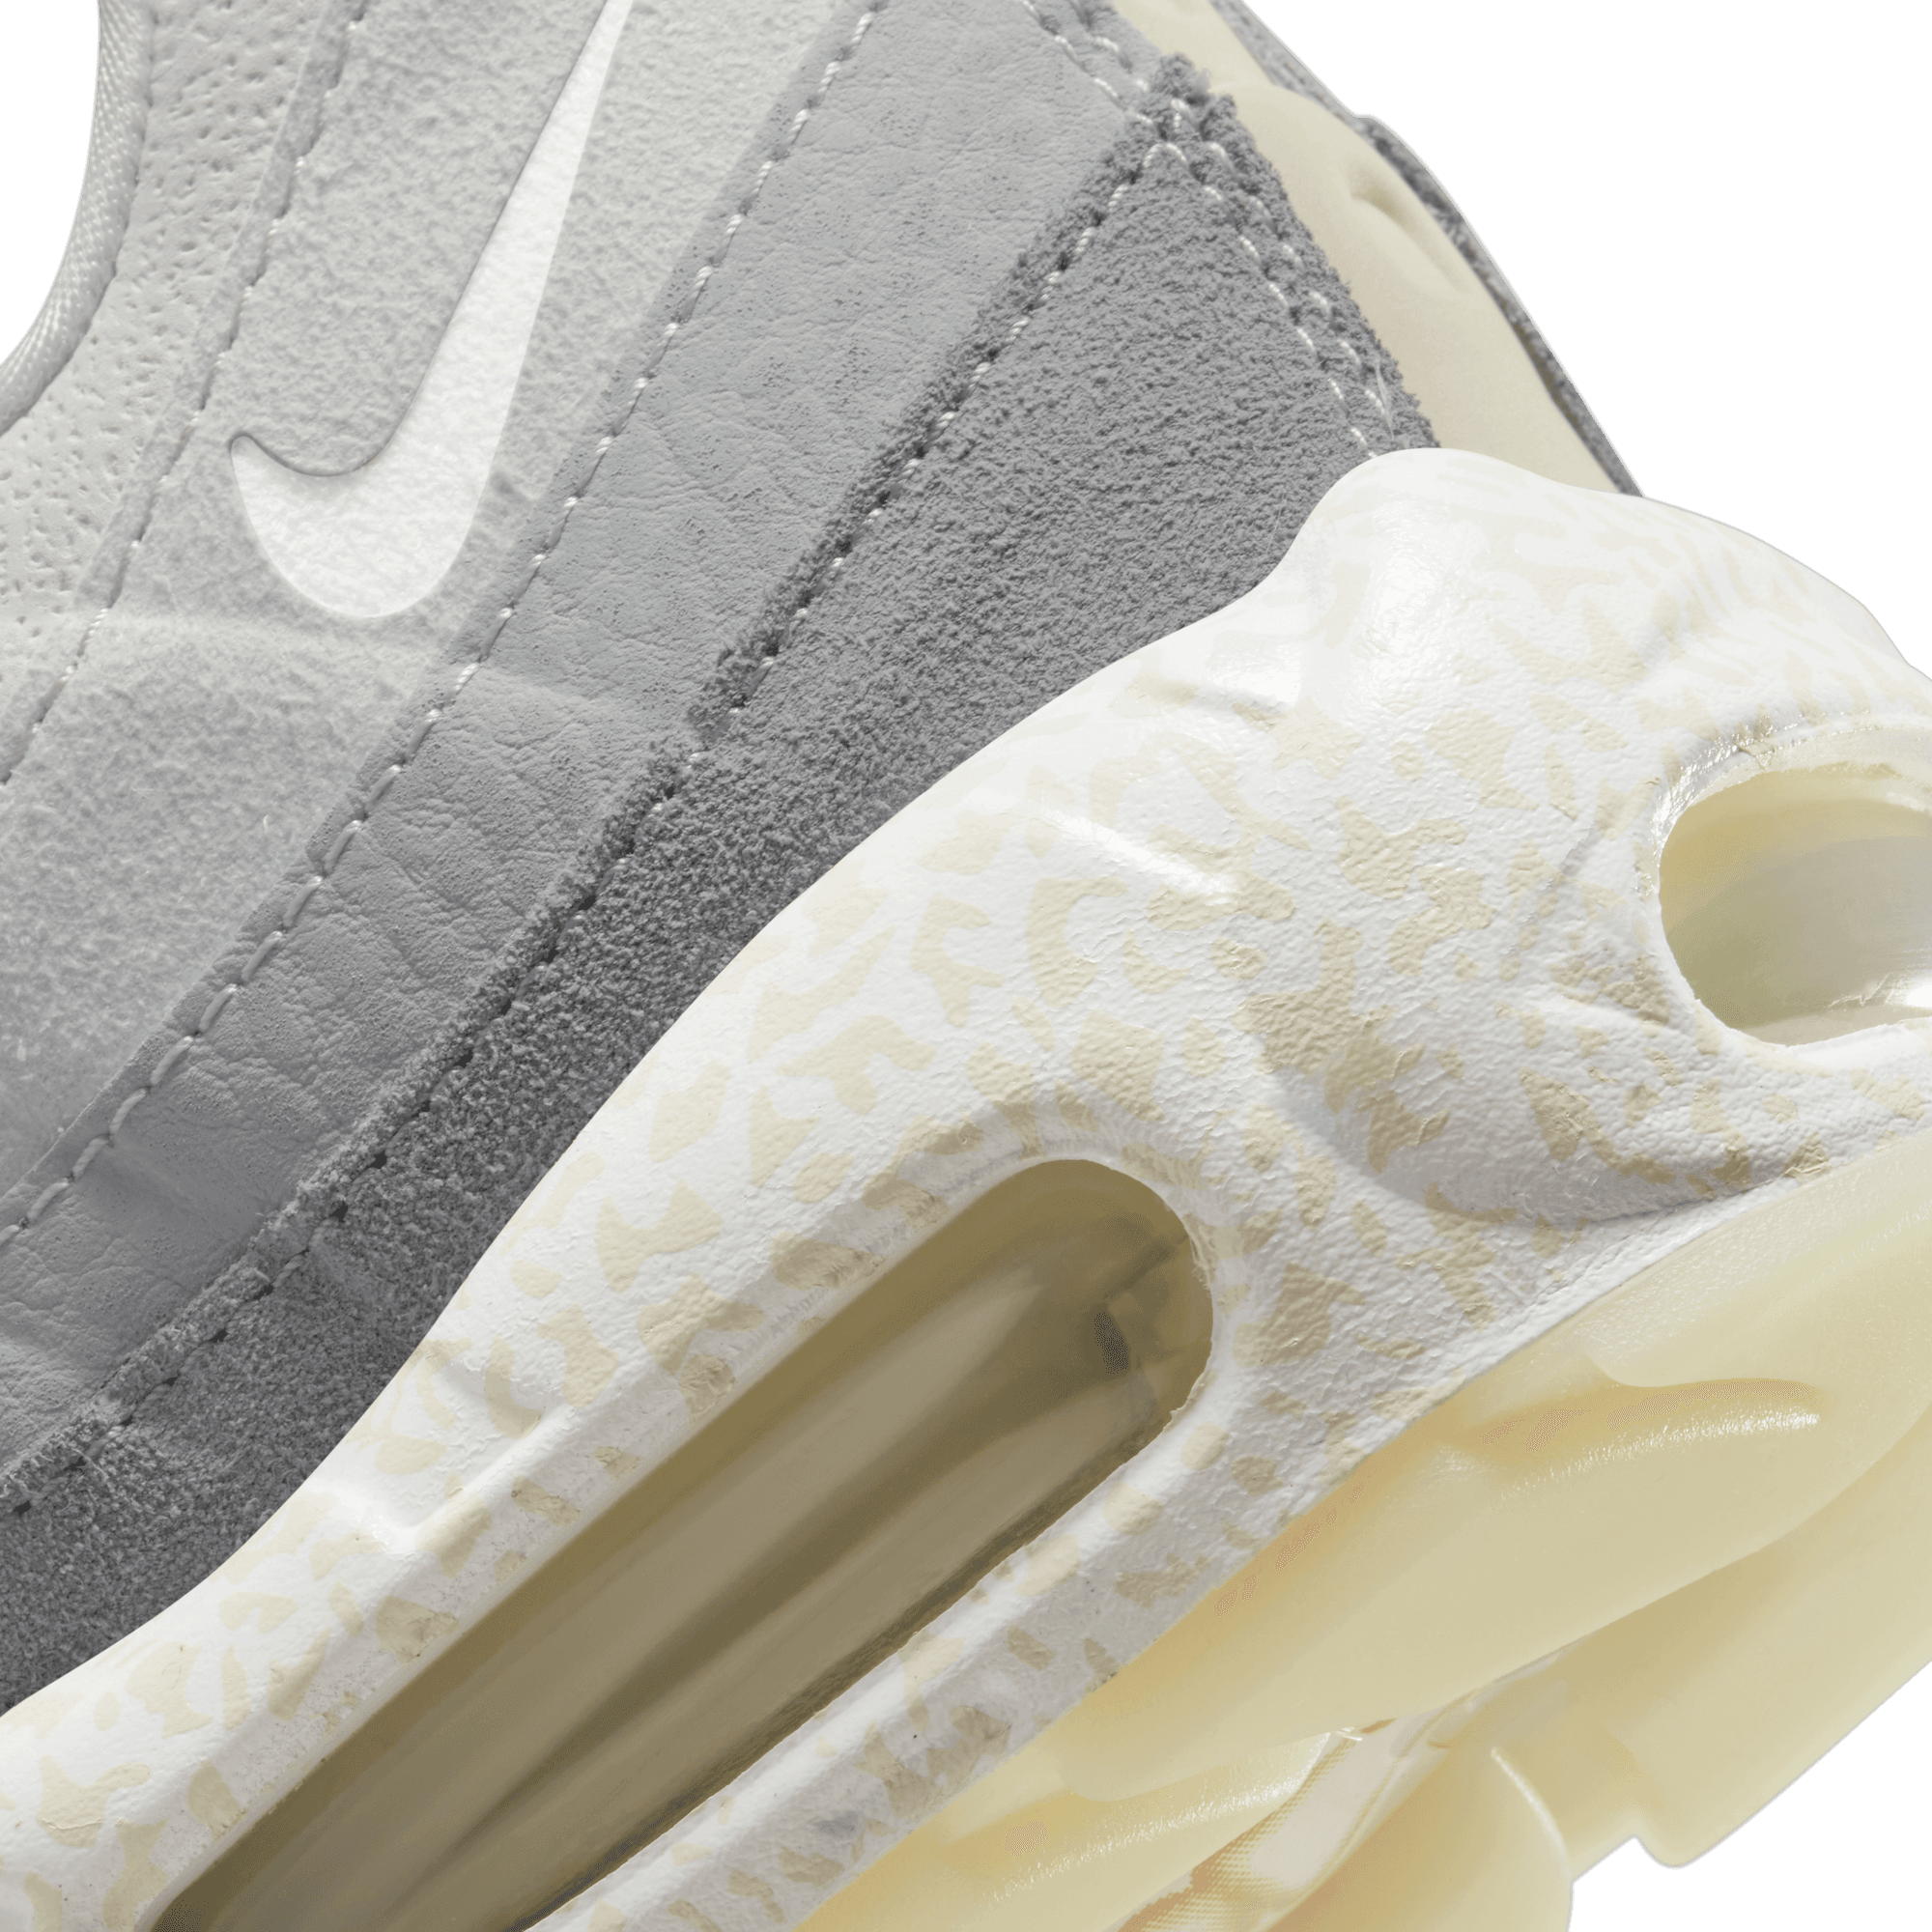 Nike Air Max 95 QS 'Bone'